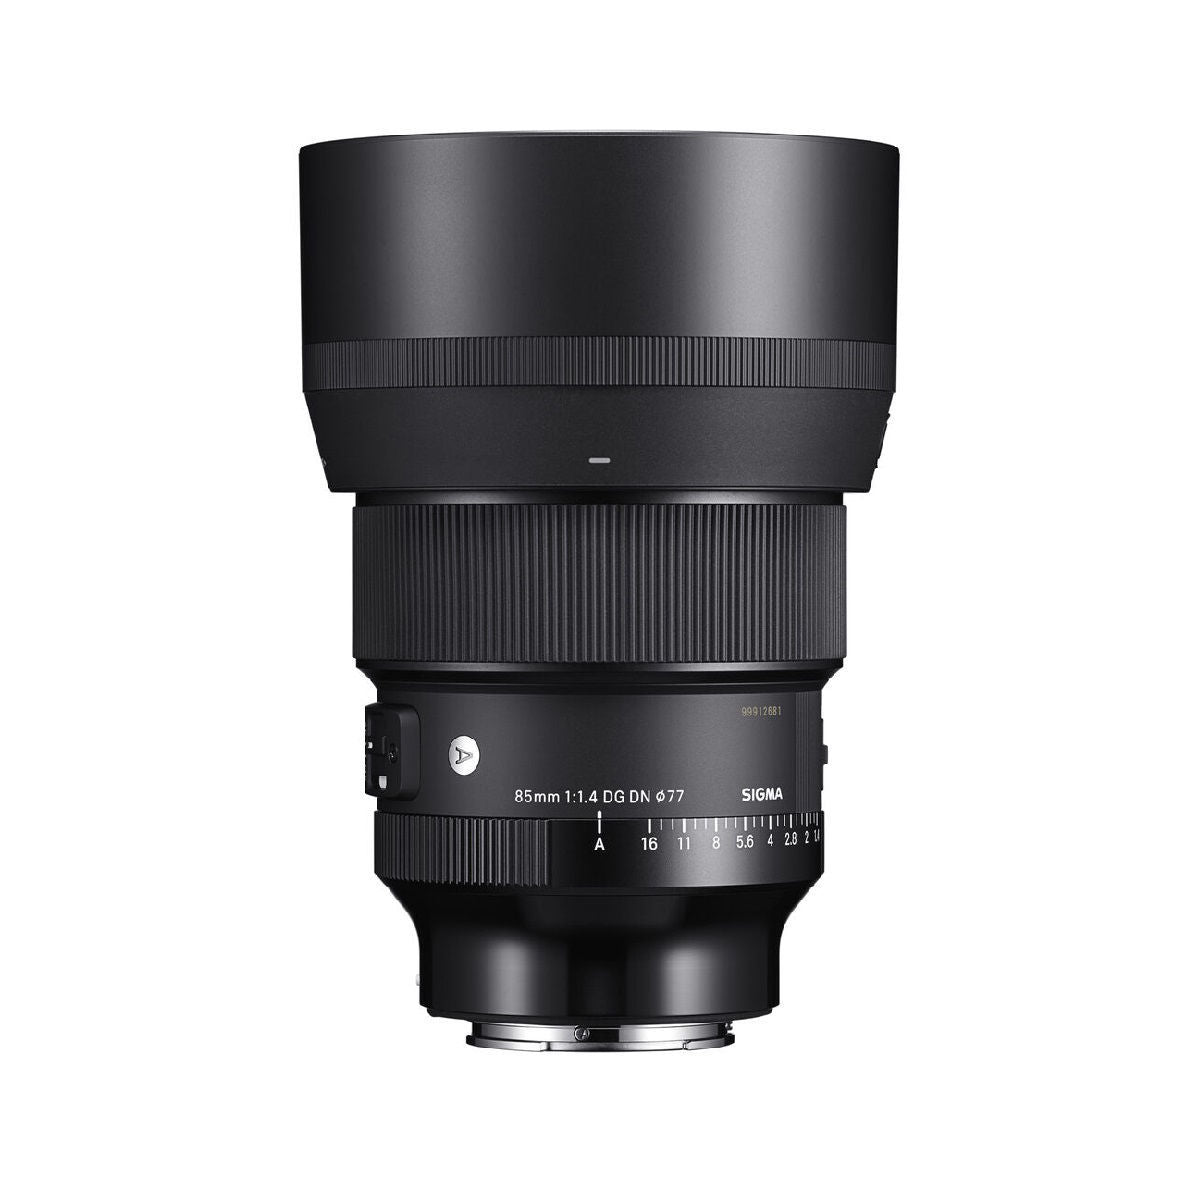 Sigma 85mm F1.4 DG DN Art Lens for Full-Frame Sony E Mount Mirrorless Cameras Black